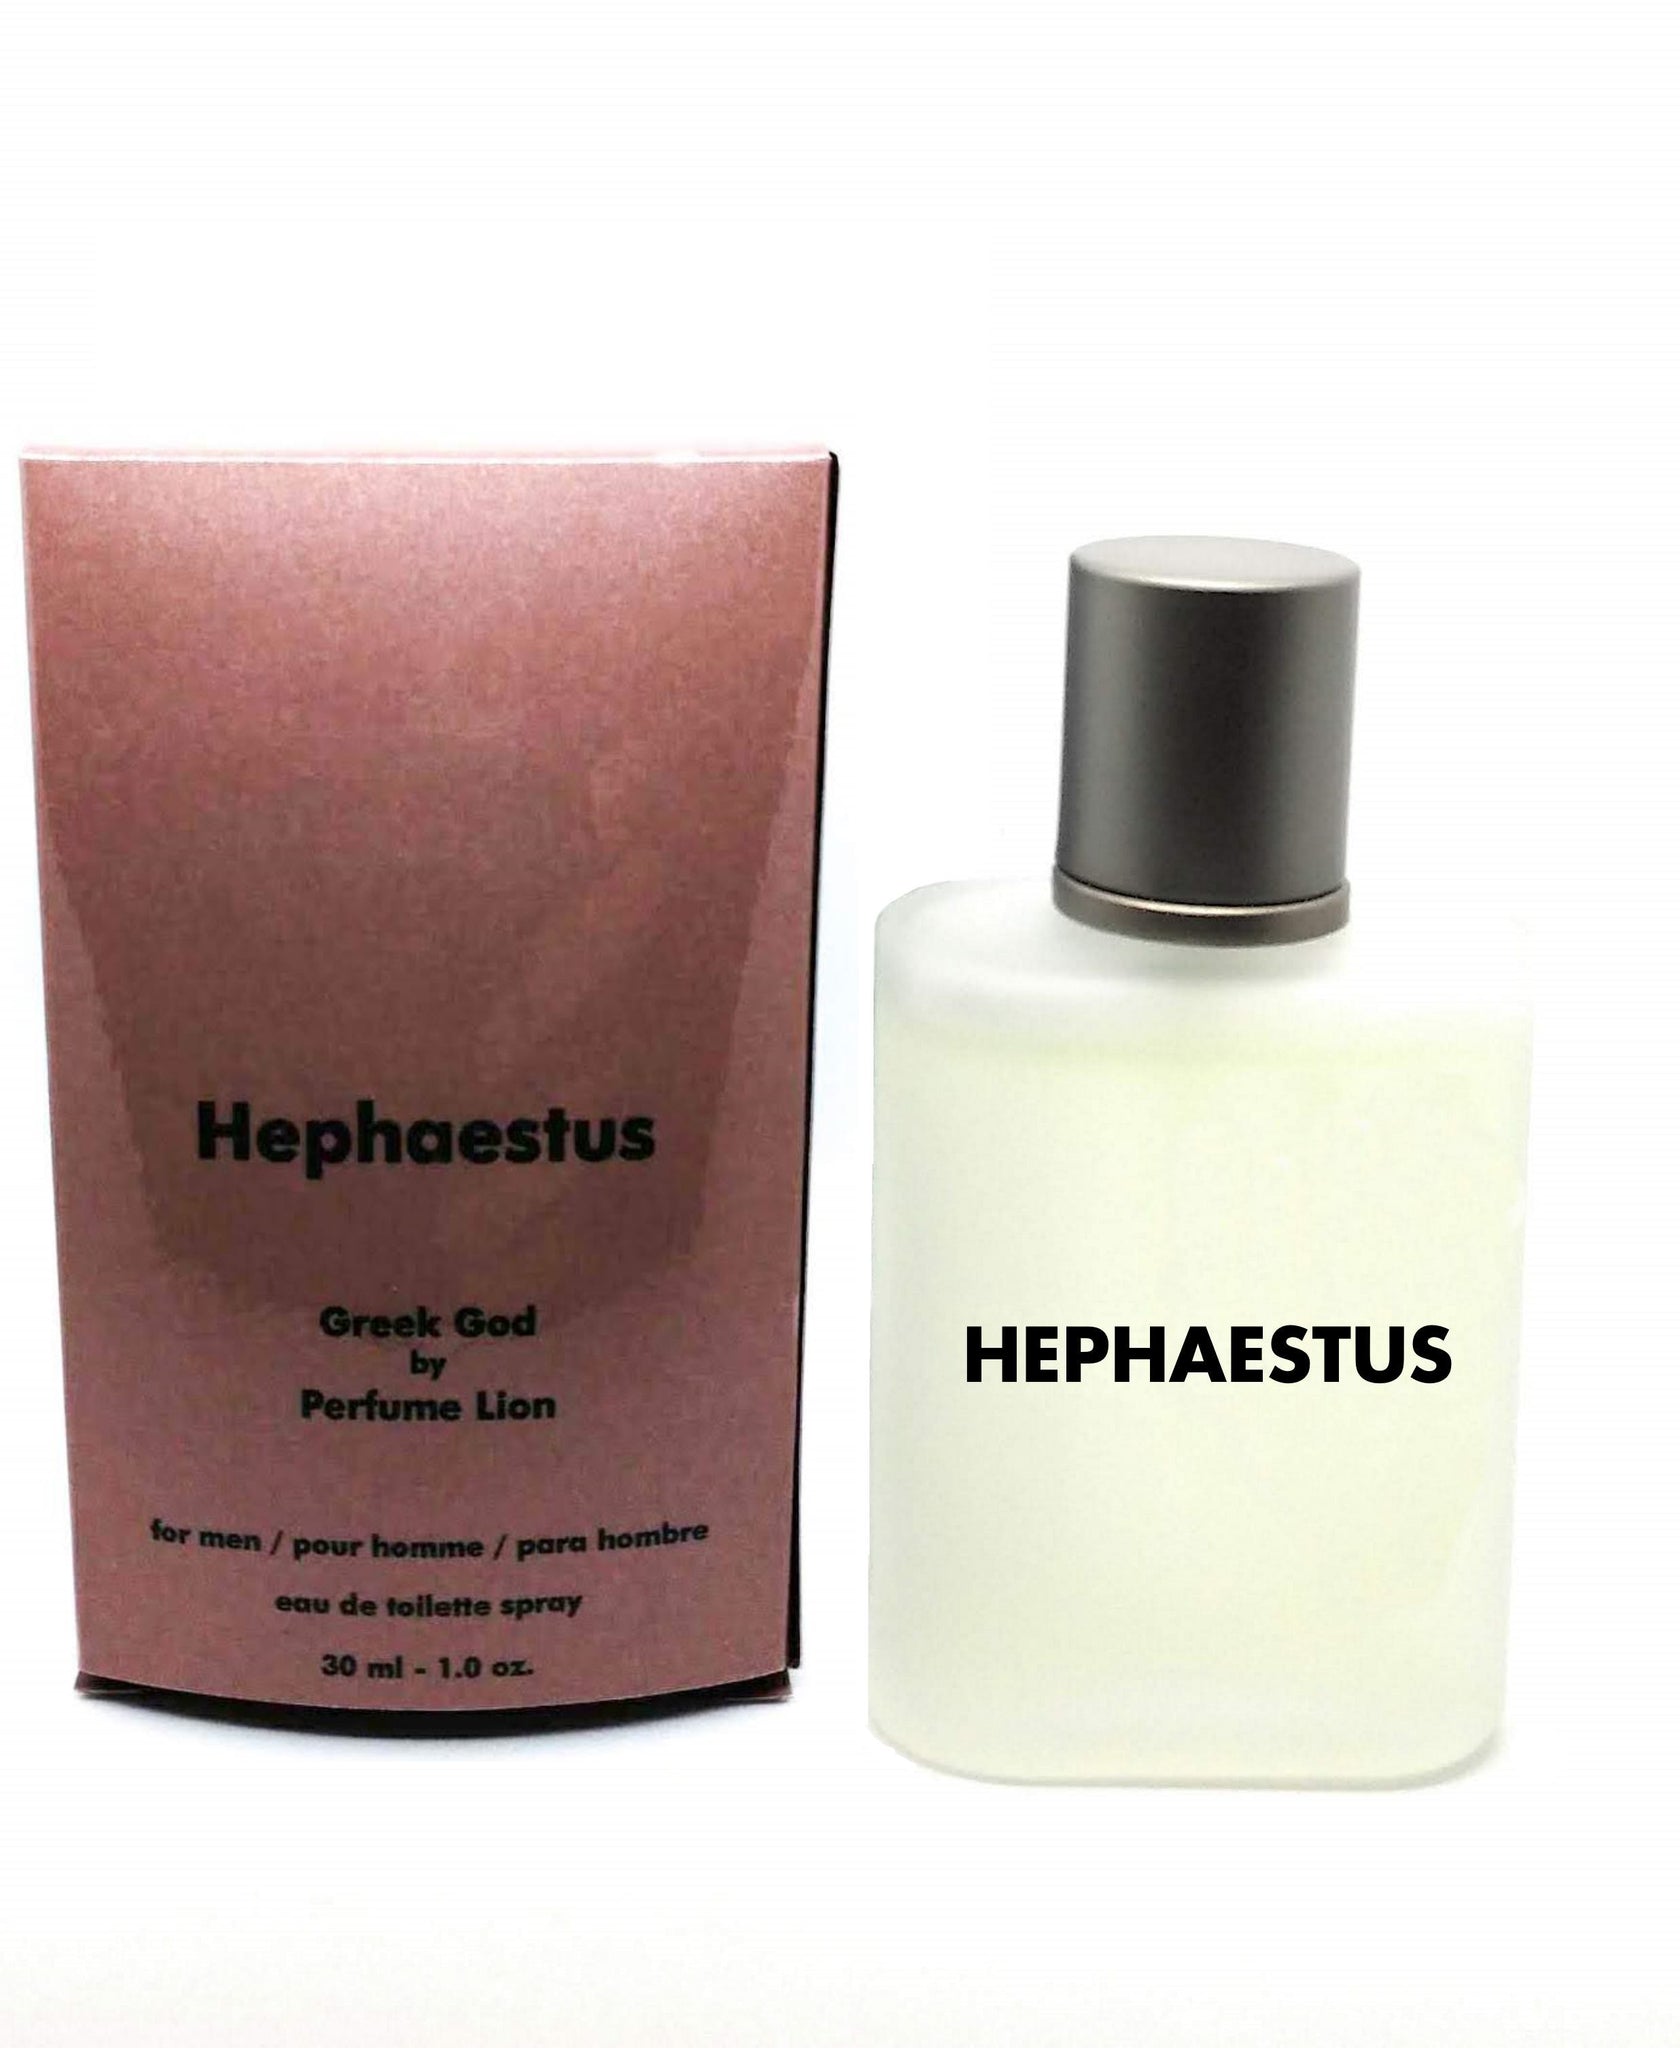 Hephaestus Perfume